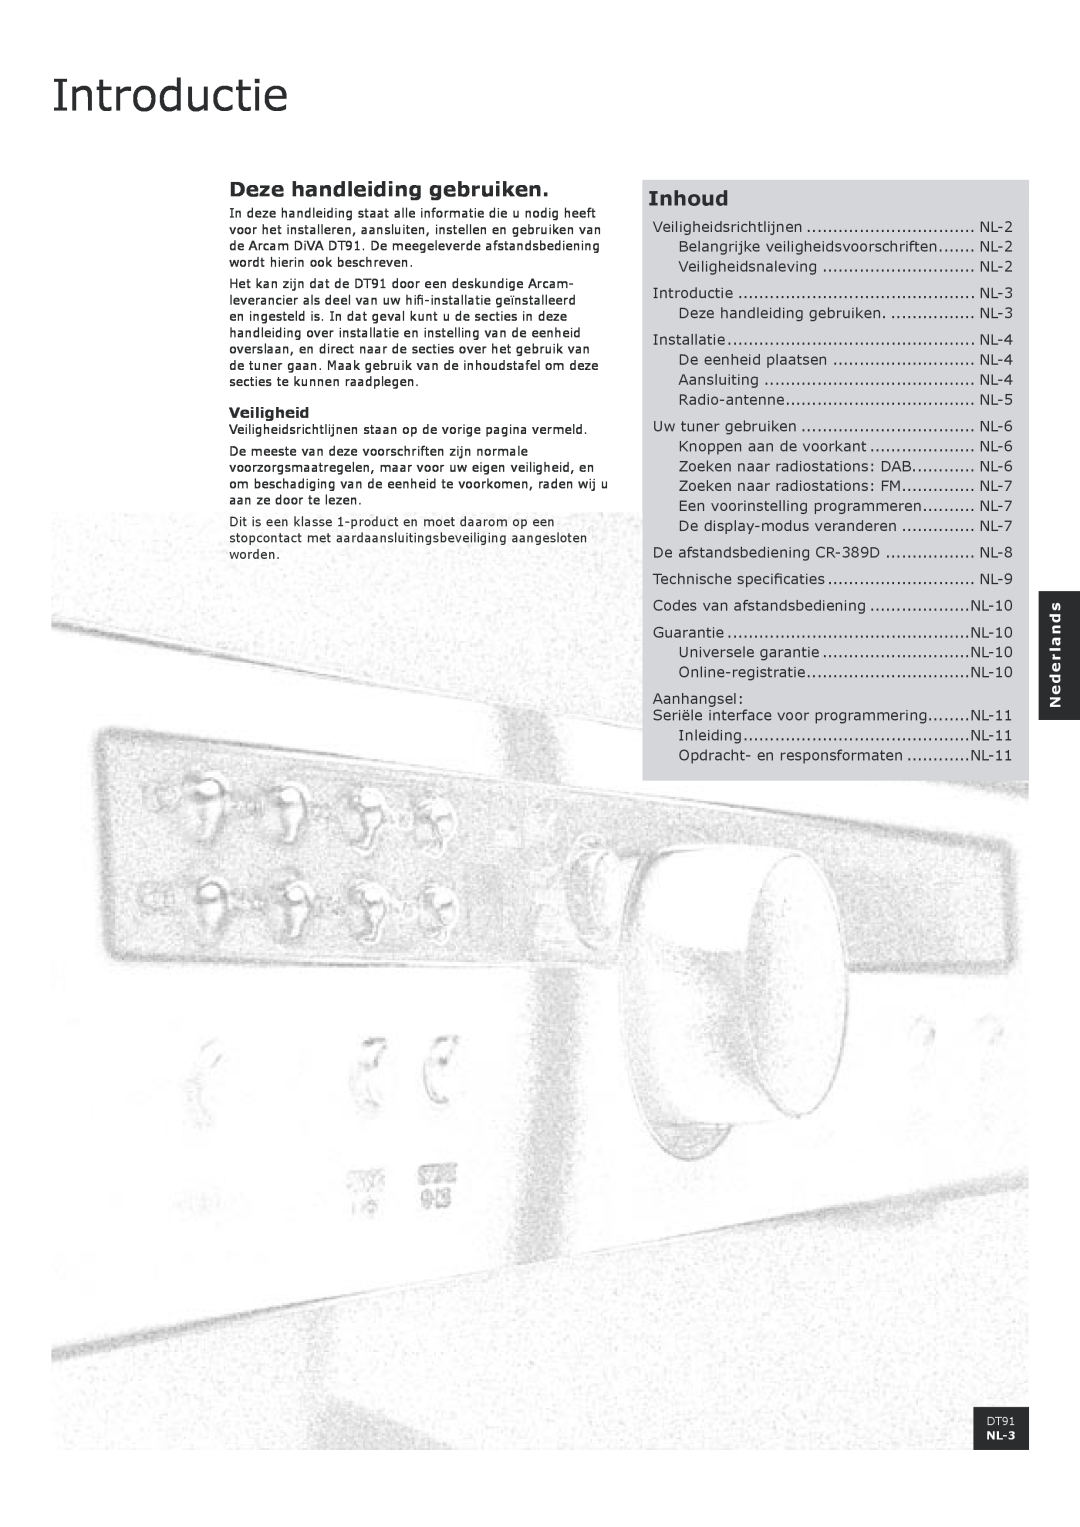 Arcam DT91 Introductie, Deze handleiding gebruiken, Inhoud, Veiligheid, NL-2, NL-3, NL-4, NL-5, NL-6, NL-7, NL-8, NL-9 